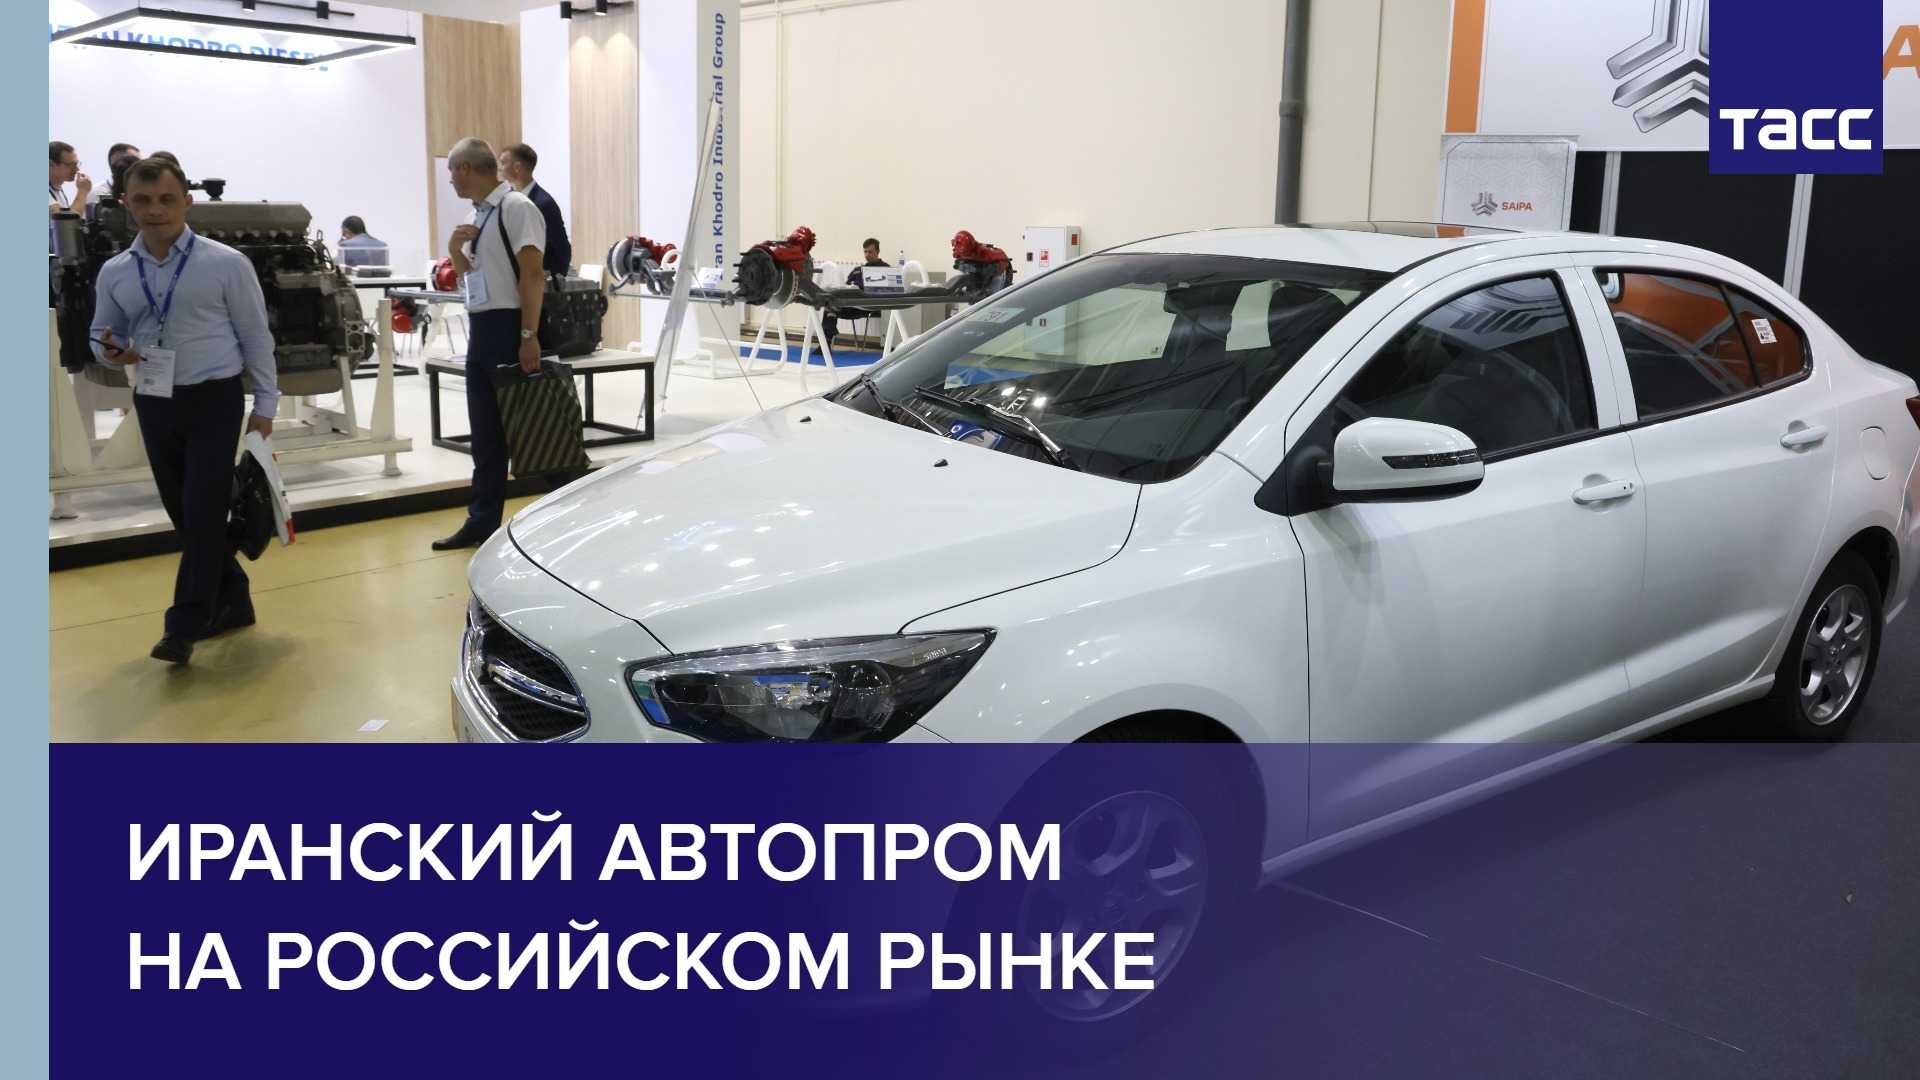 Иранская автокомпания saipa готовится представить свои авто на российском рынке - новости транспорта